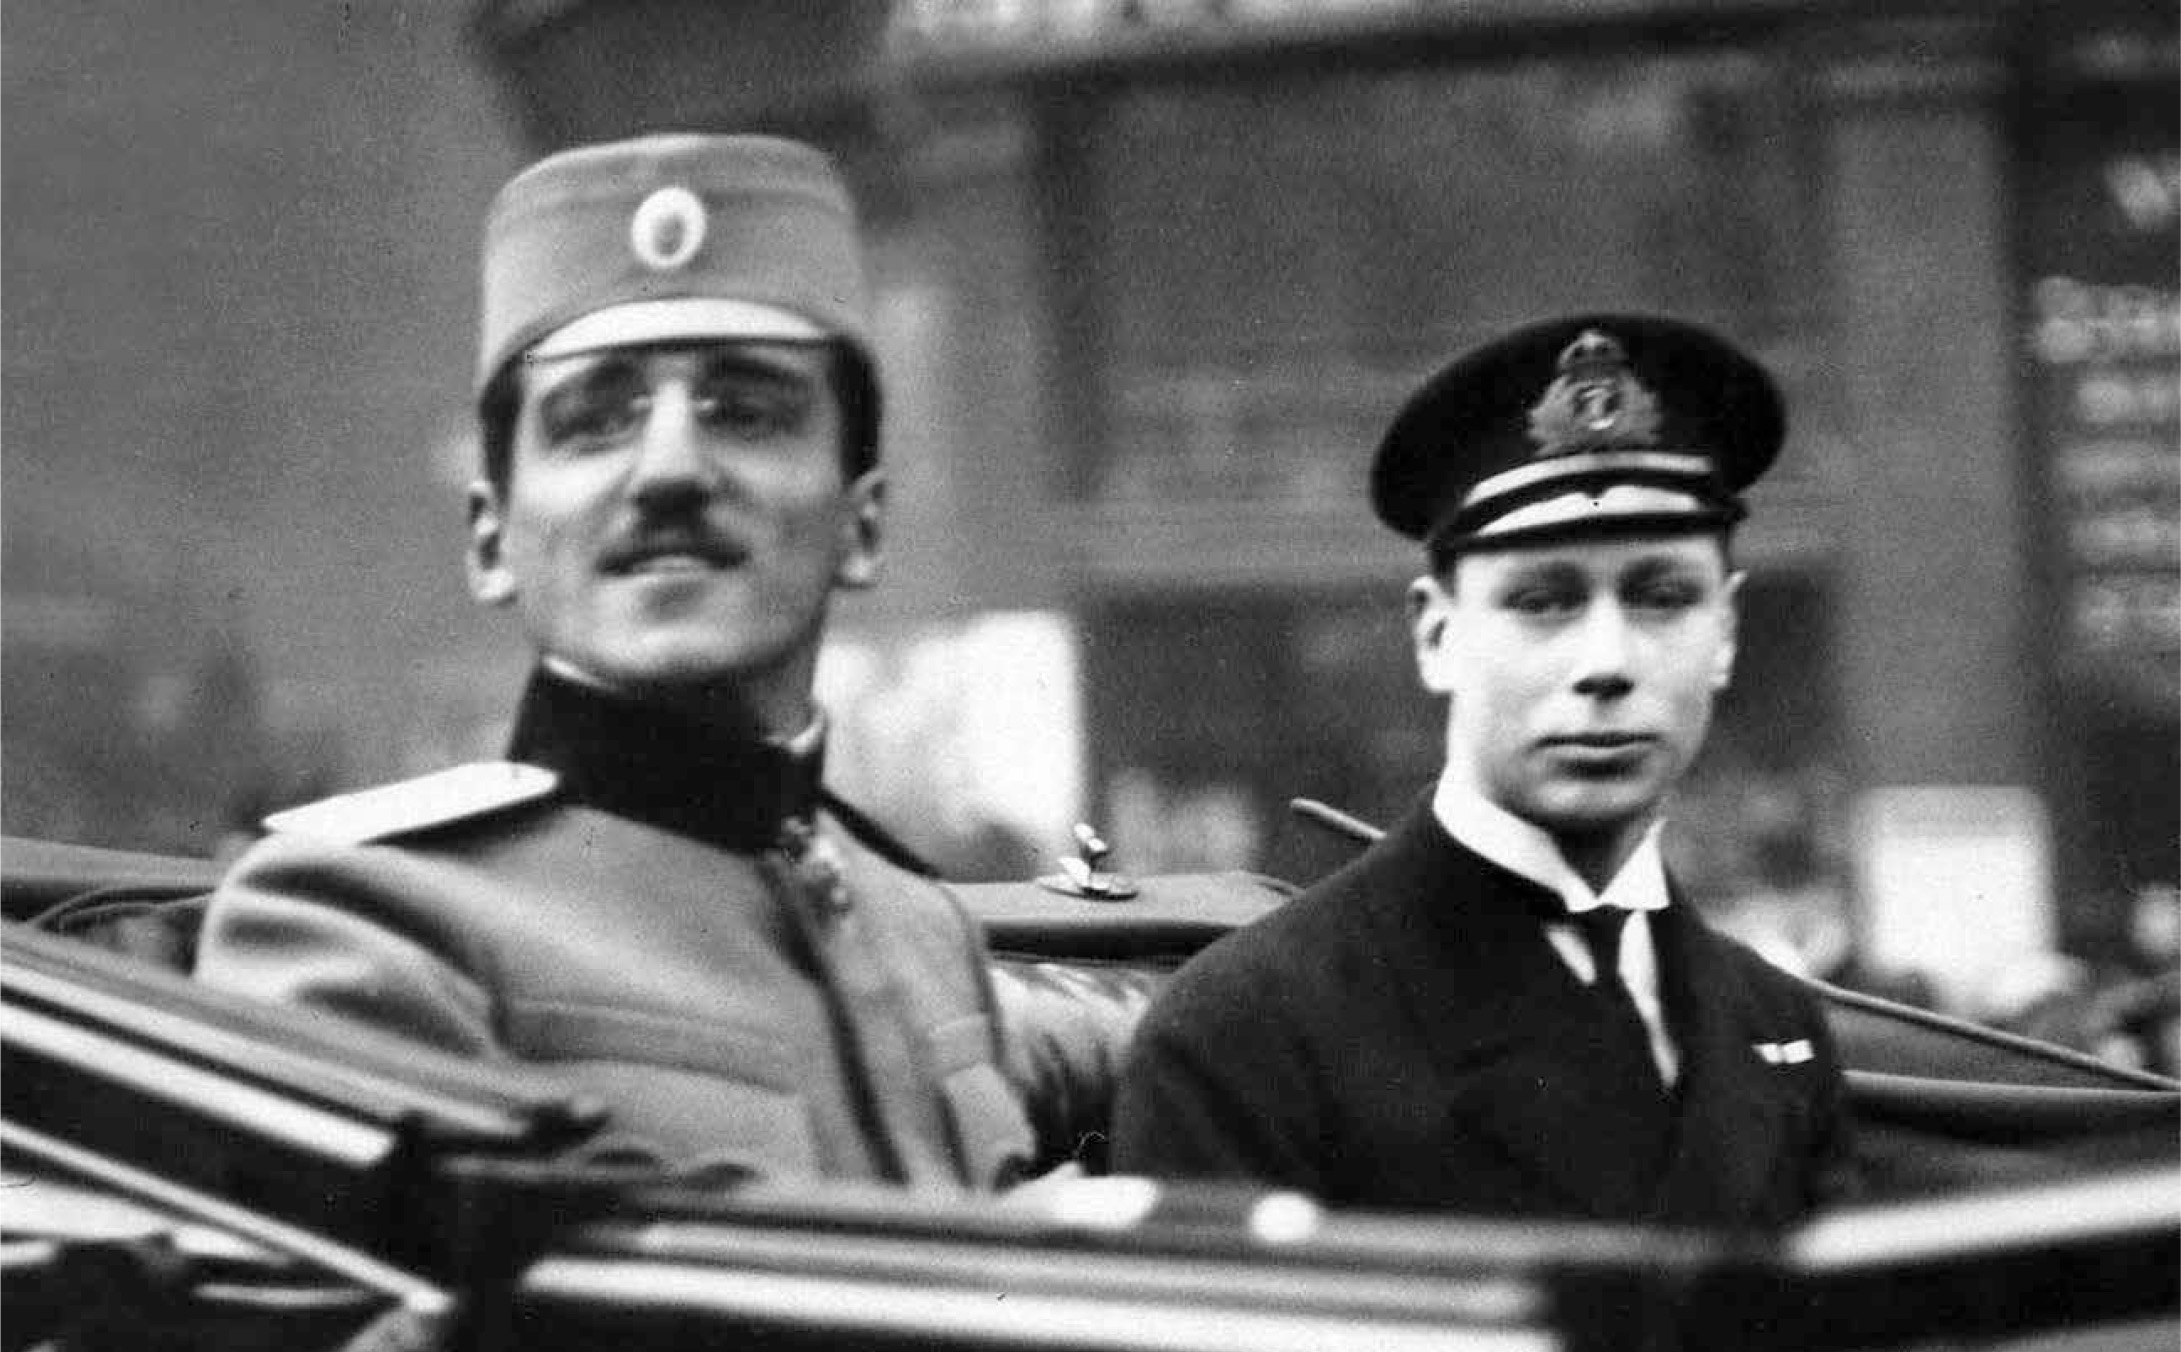 Њ.K.В. Регент Александар и Њ.K.В. Принц Алберт у Лондону, 1916.